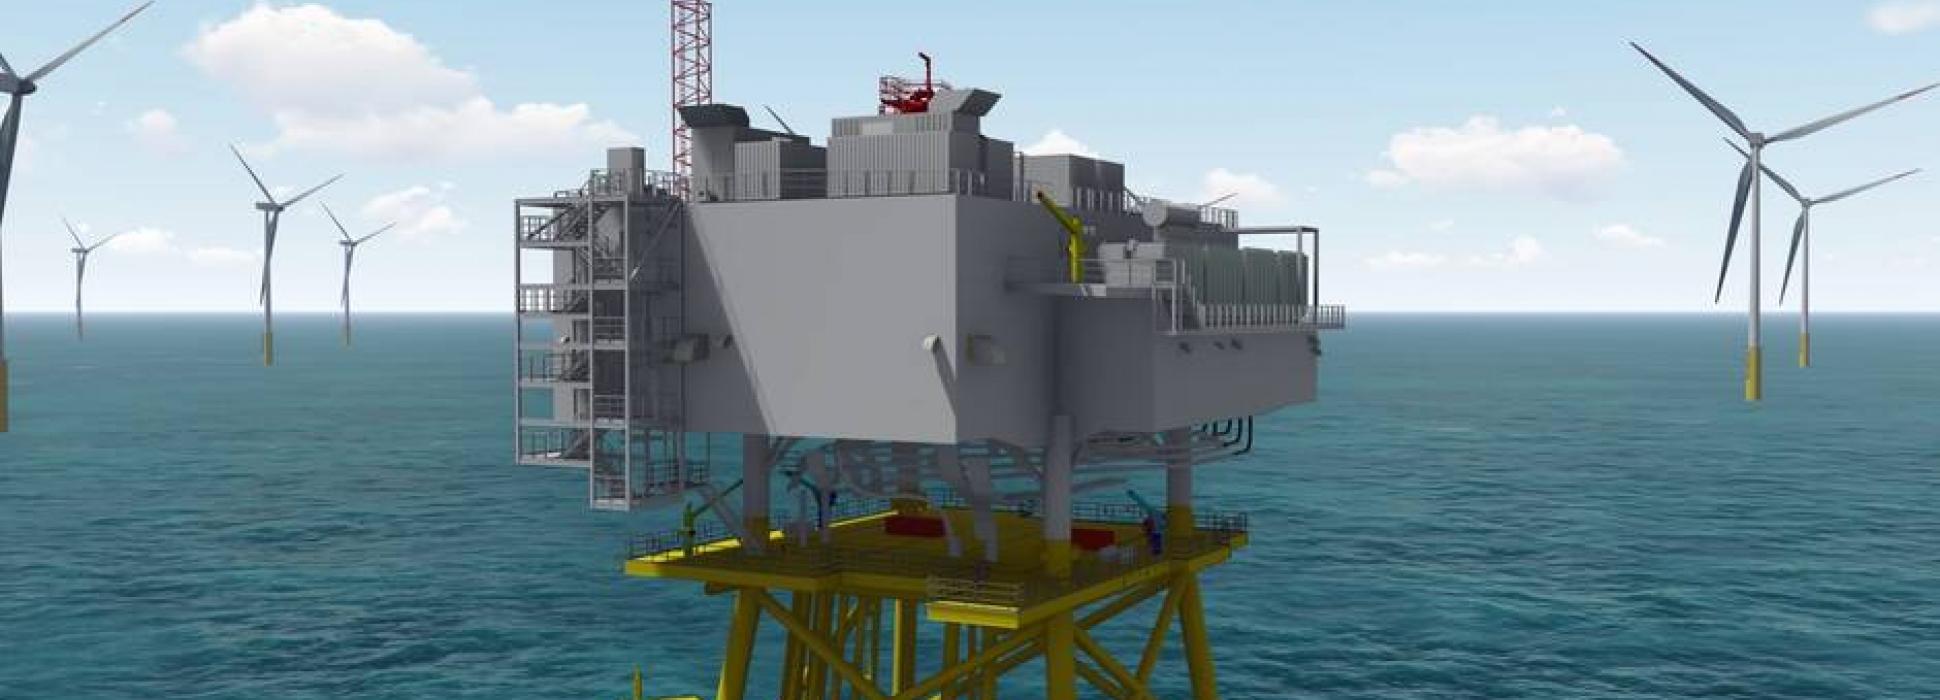 Les Chantiers de l’Atlantique de Saint-Nazaire assureront la maintenance de trois sous-stations électriques des parcs éoliens en mer